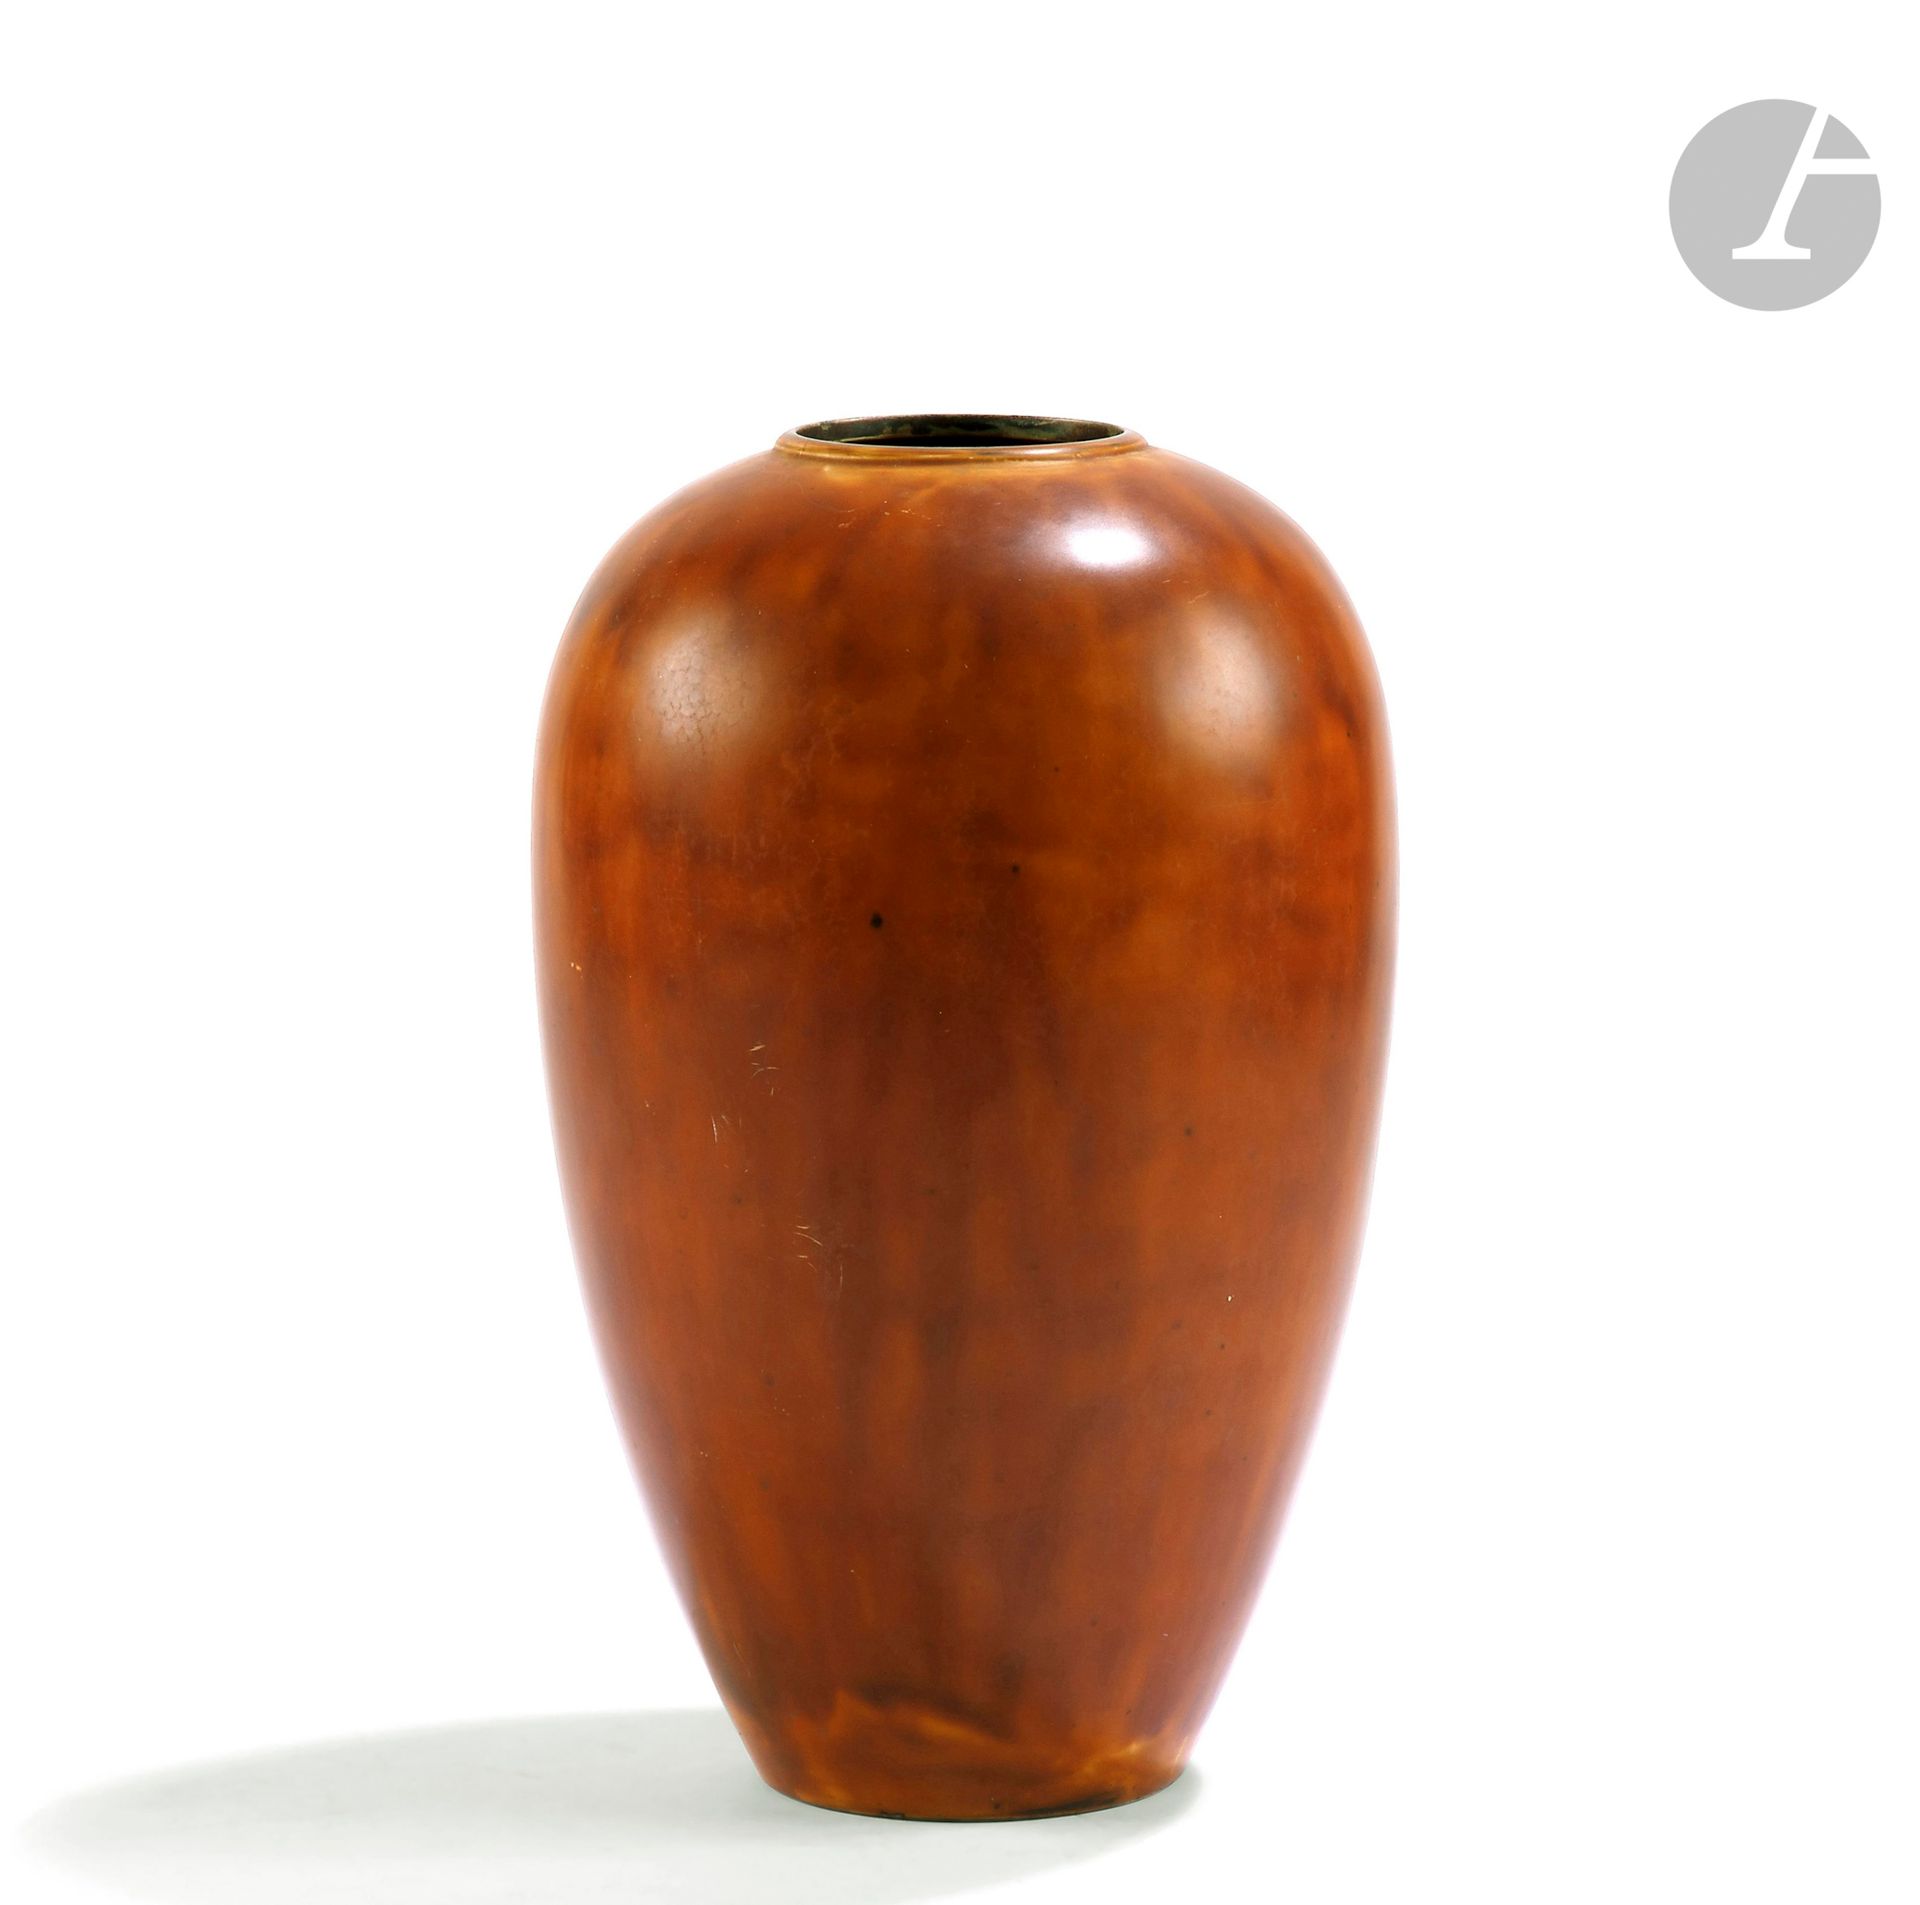 Null 让-杜南(1877-1942)
阳台花瓶，颈部略微突出的环形。
锤装铜器的证明，完全覆盖着原来的金黄色（自然）漆。
20世纪20年代的作品。
肩部有修&hellip;